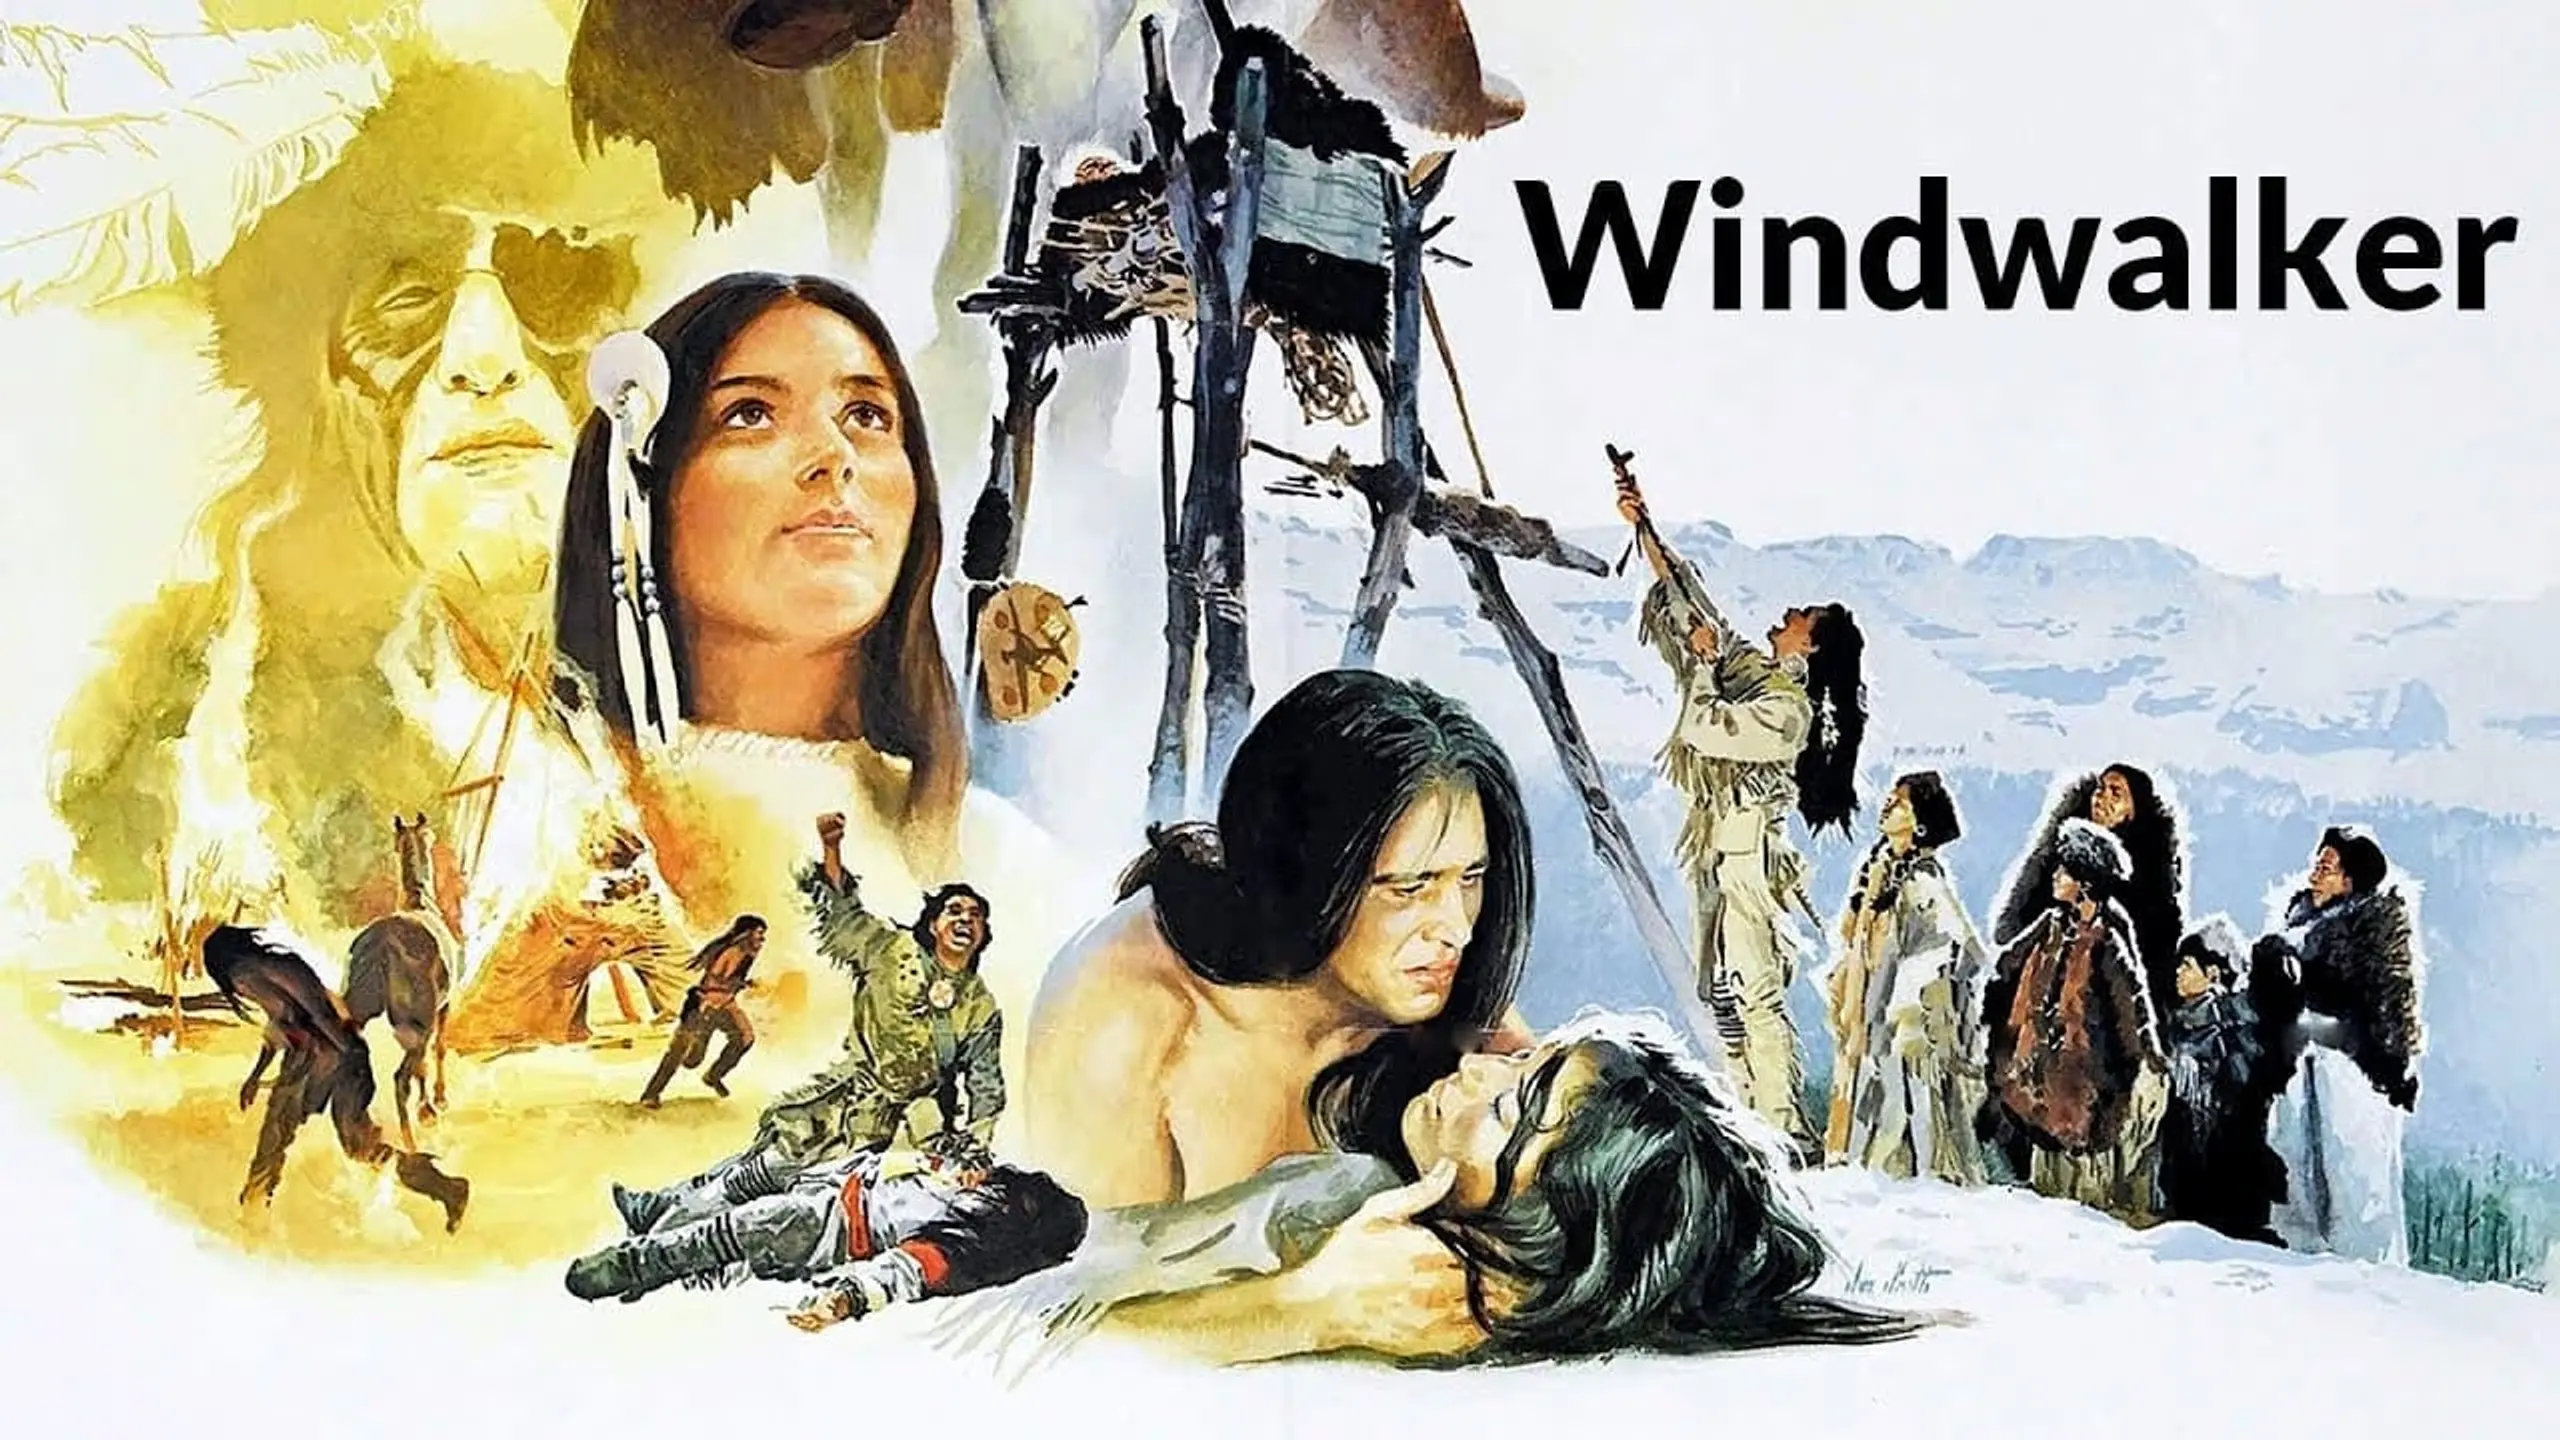 Windwalker - Das Vermächtnis des Indianers